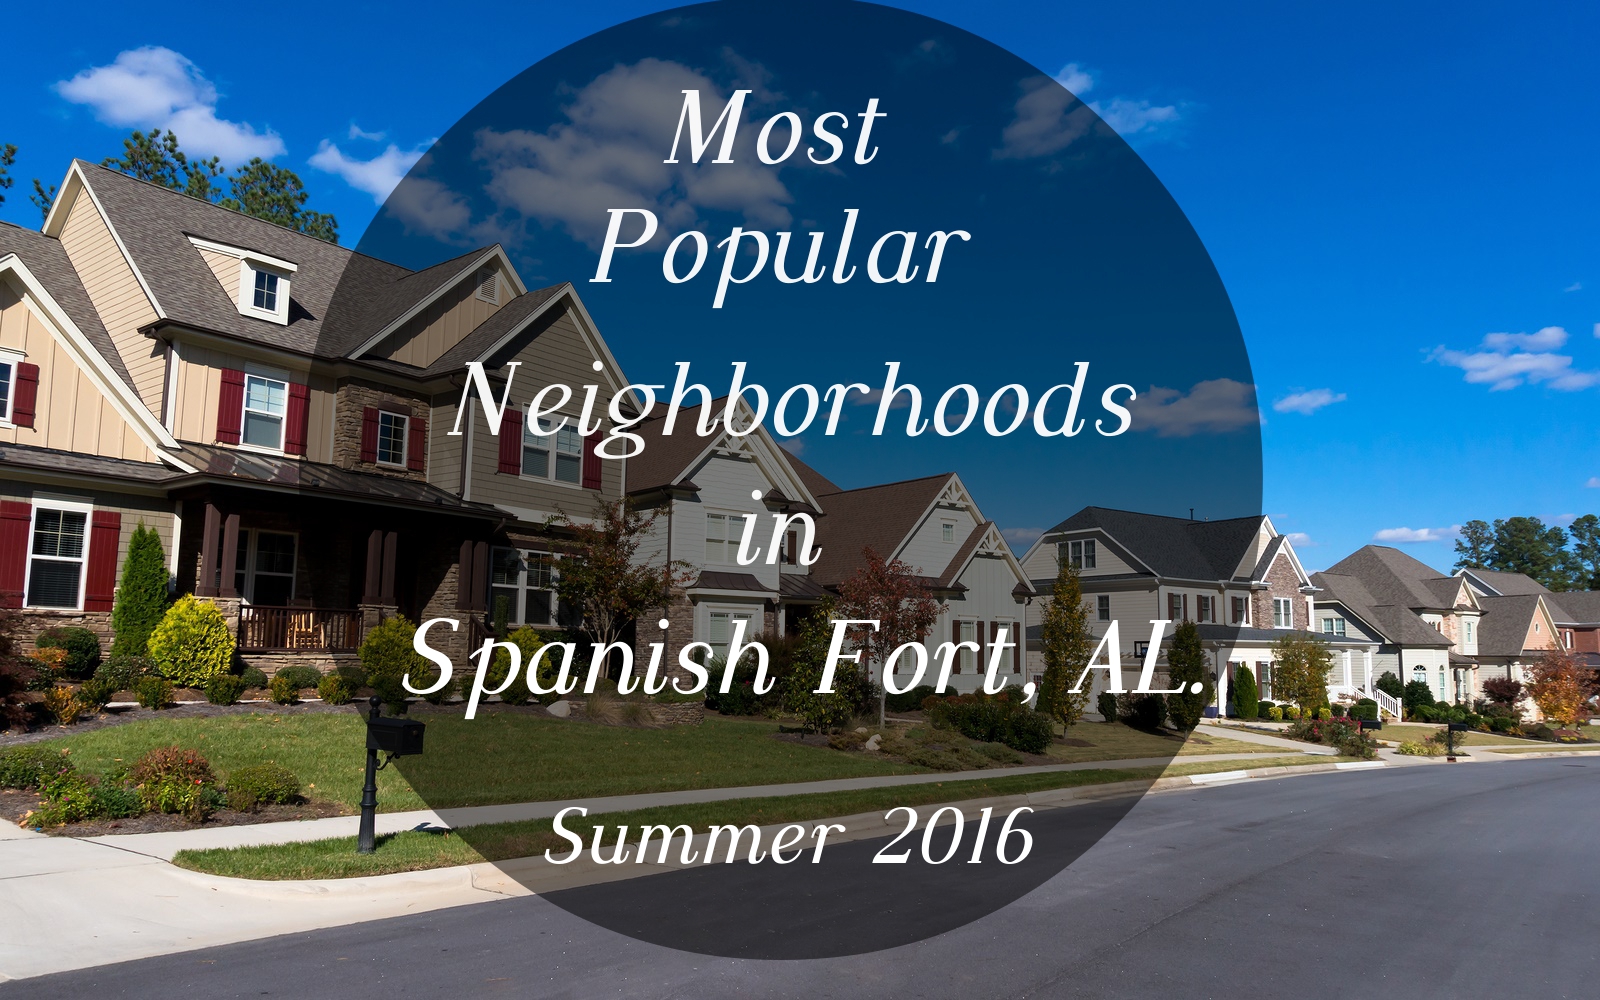 Most popular neighborhoods in Spanish Fort, AL